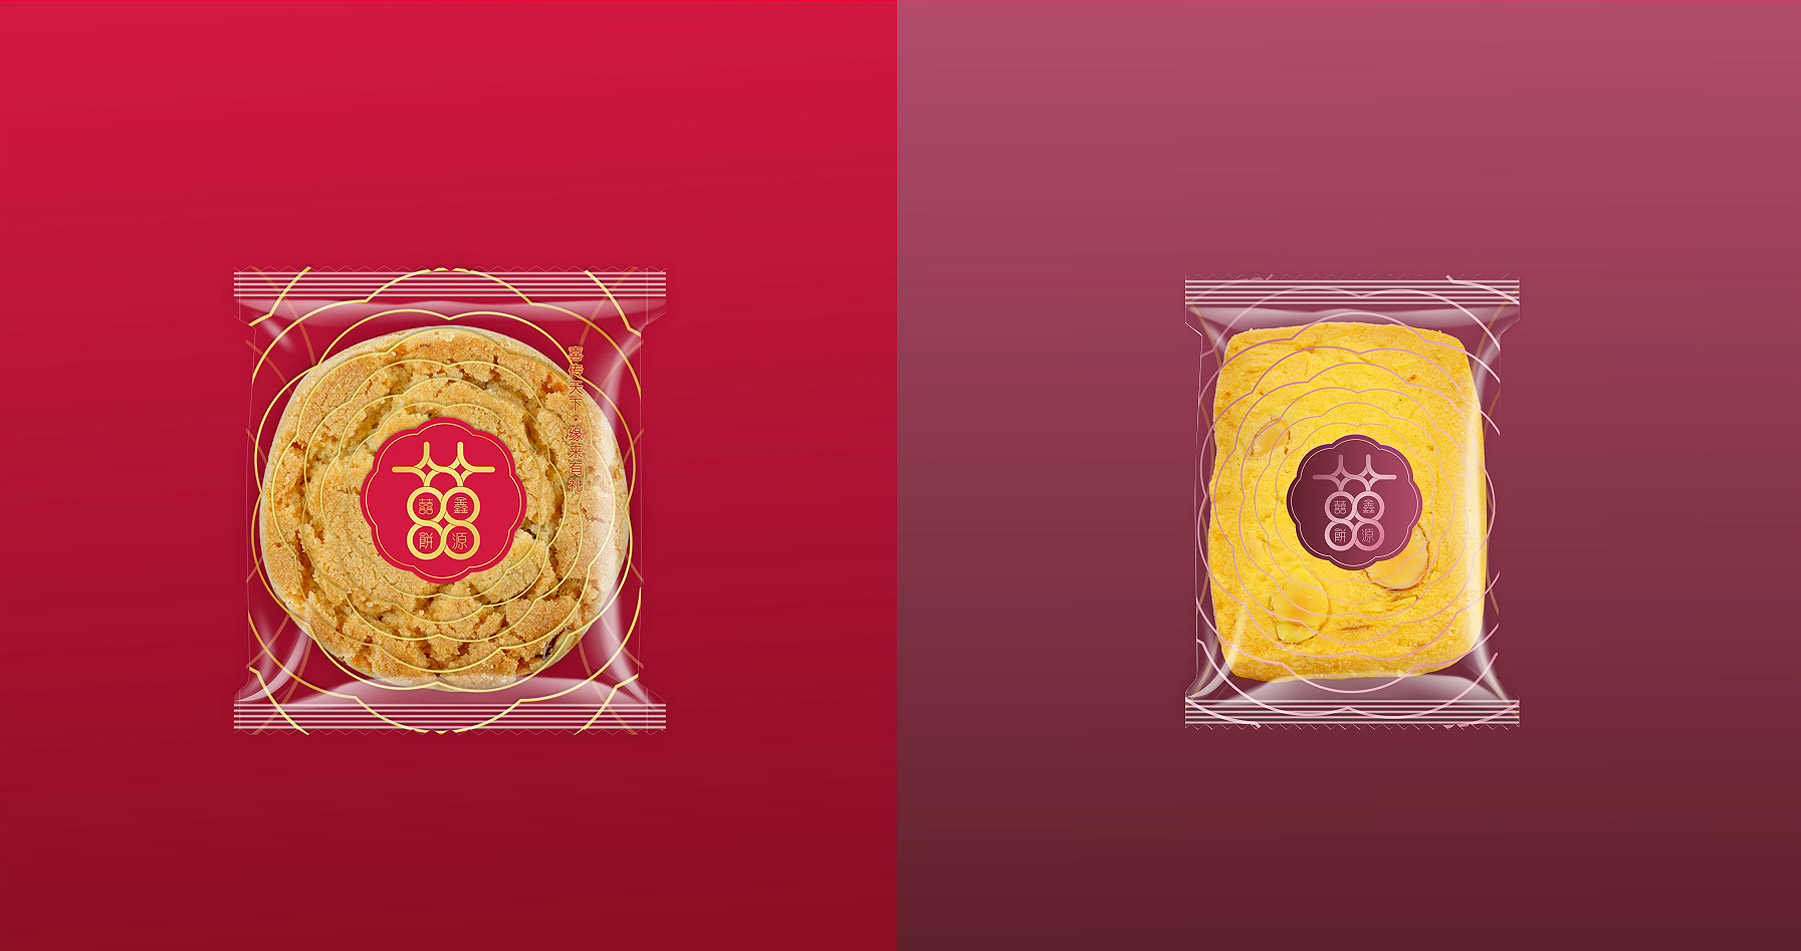 鑫源喜饼品牌全案策略设计创意喜饼包装袋设计